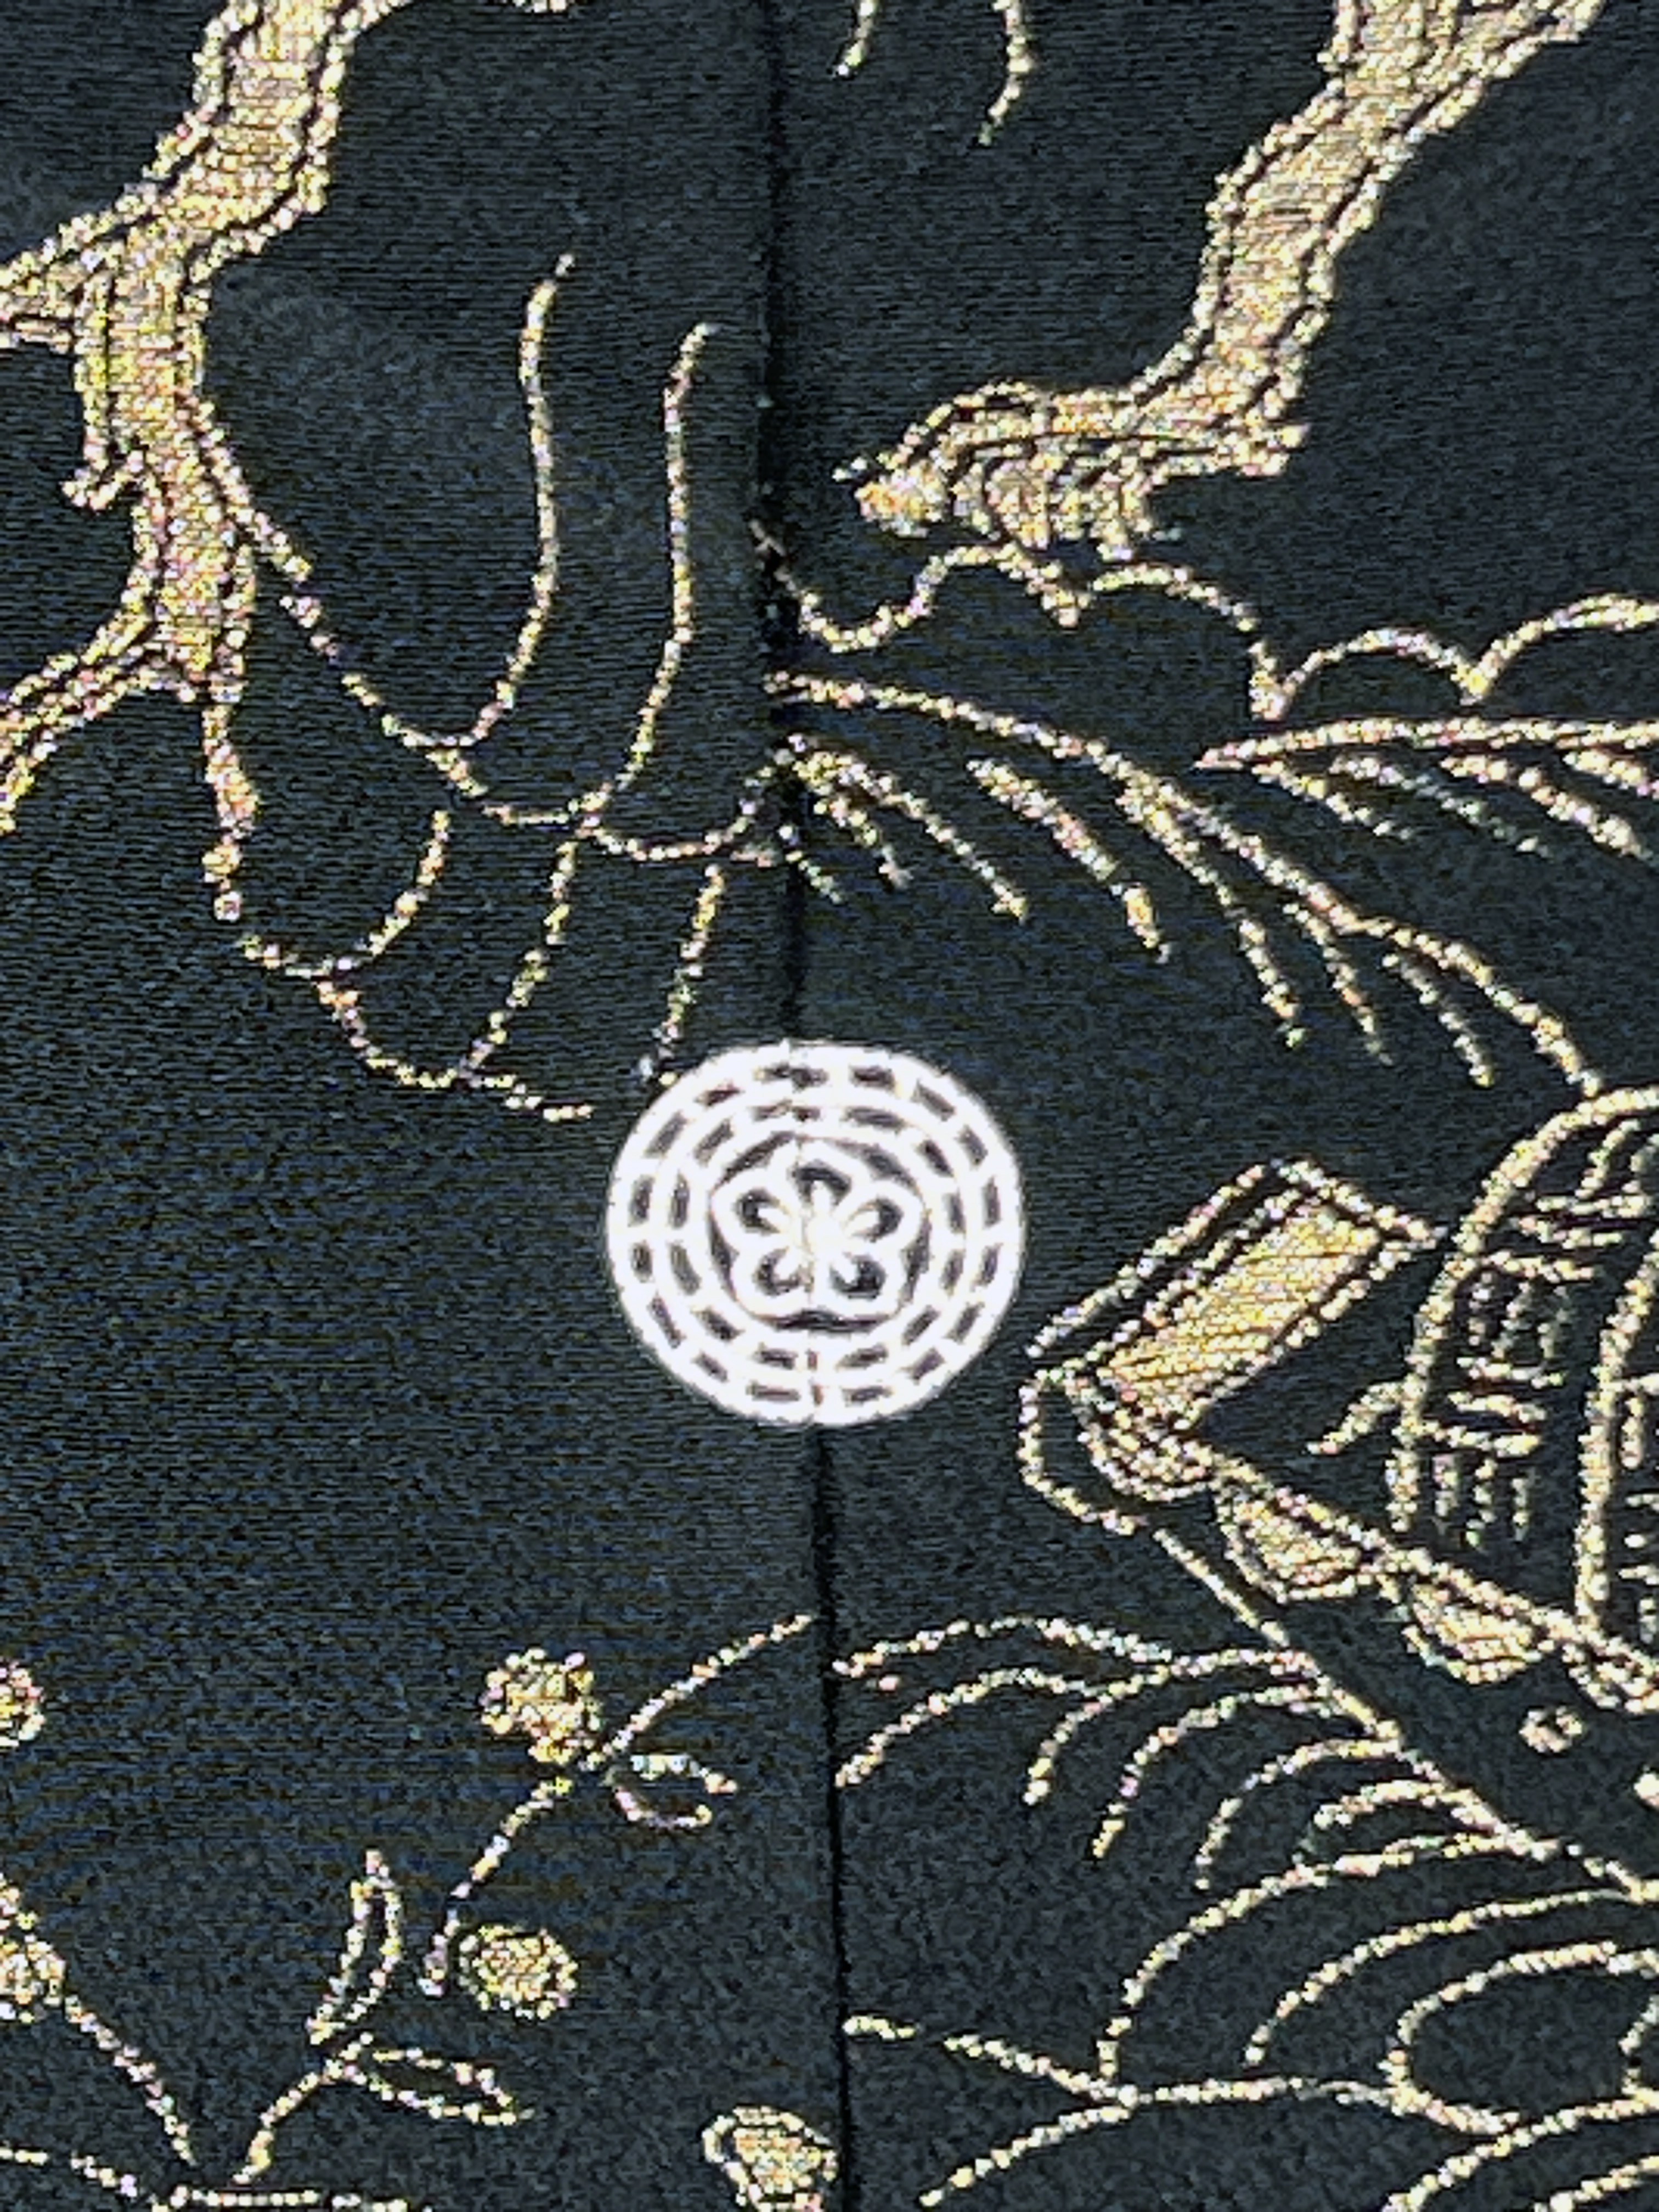 2 Vintage Japanese Kimonos Haoris image 7